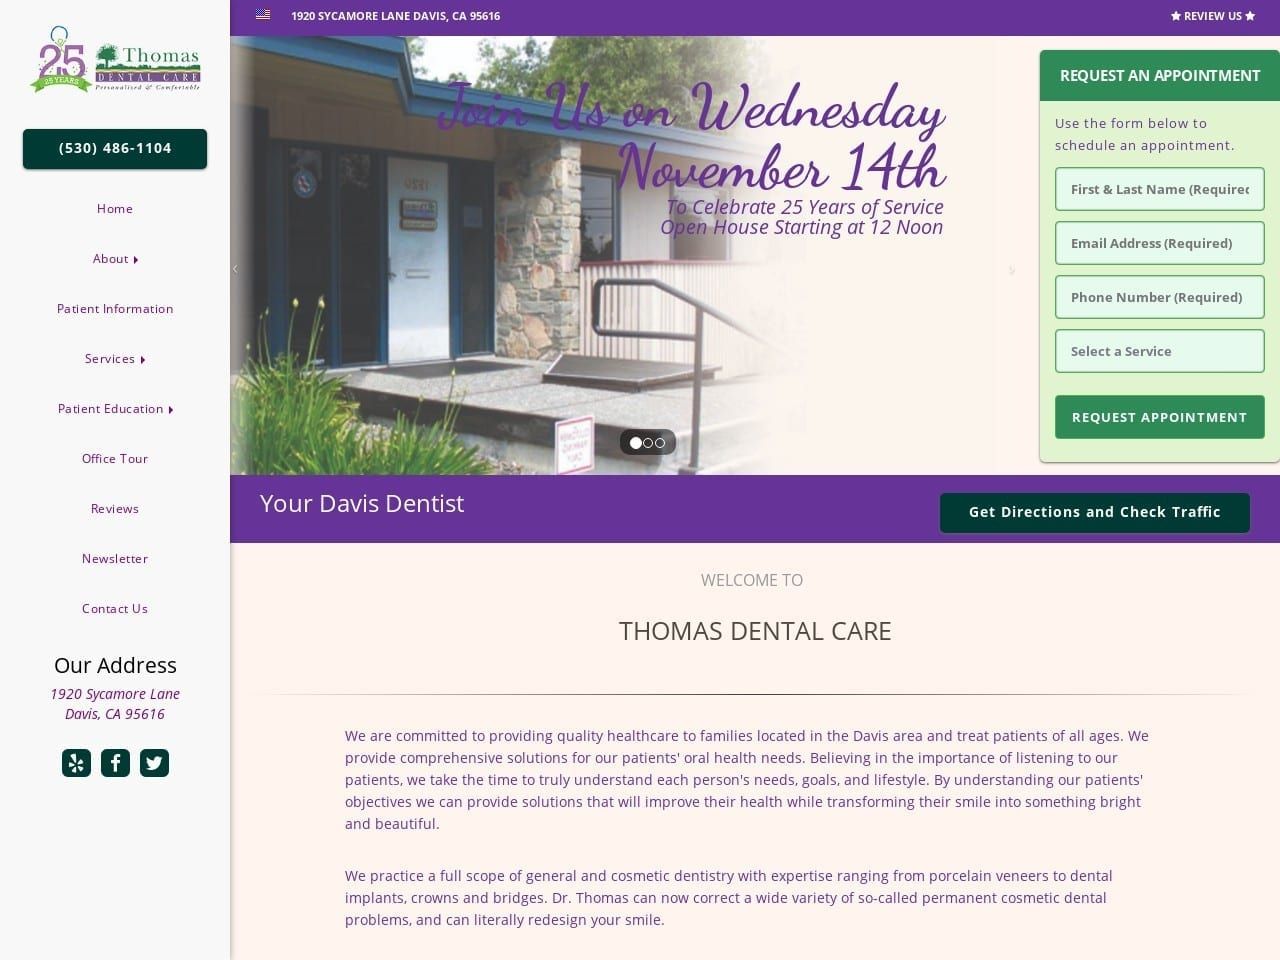 Thomas Dental Care Website Screenshot from thomasdentalcare.com